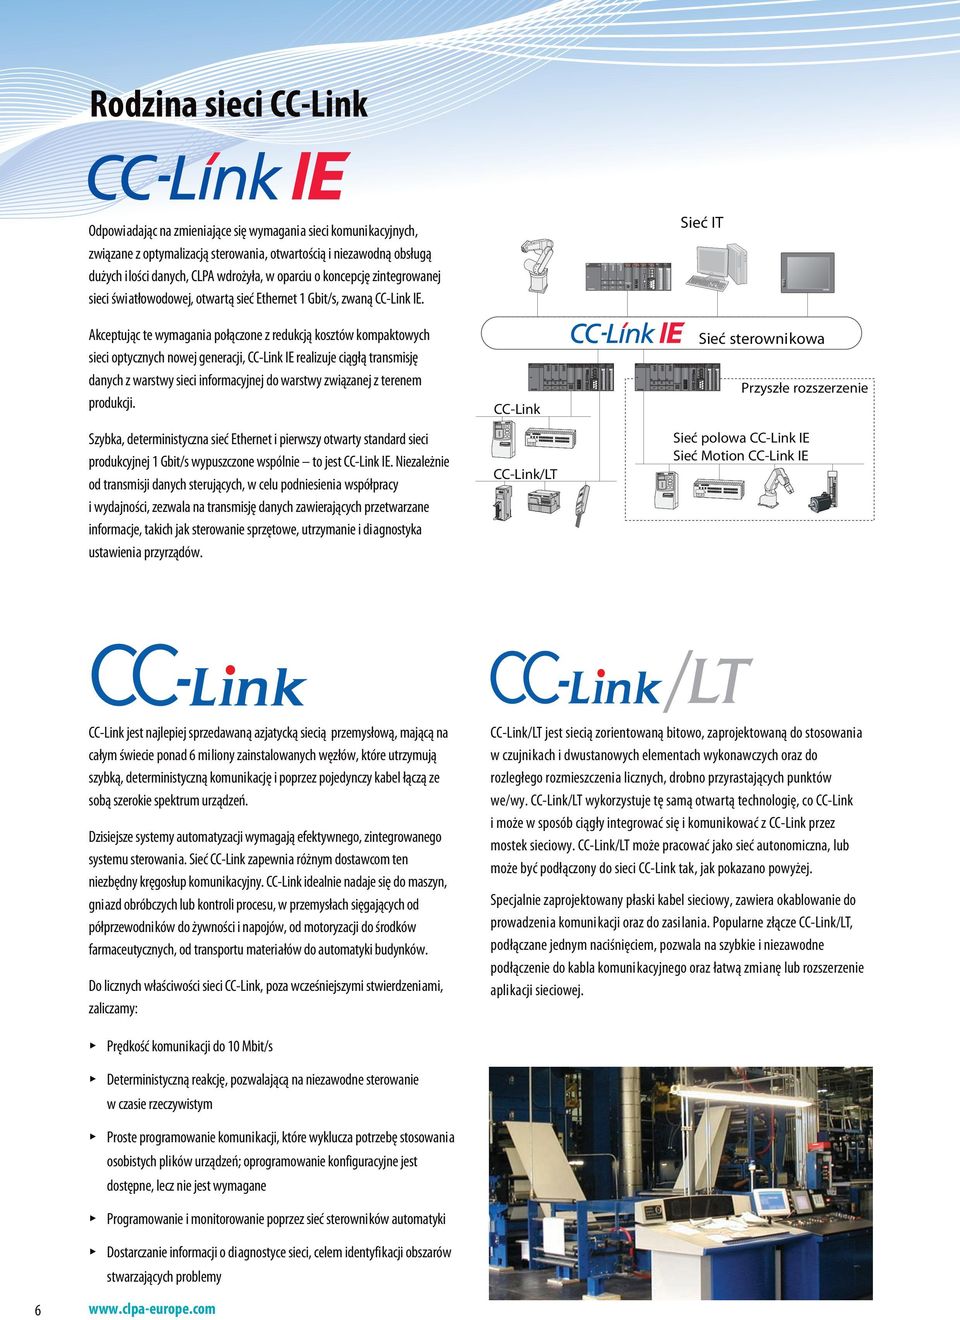 Akceptując te wymagania połączone z redukcją kosztów kompaktowych sieci optycznych nowej generacji, CC-Link IE realizuje ciągłą transmisję danych z warstwy sieci informacyjnej do warstwy związanej z